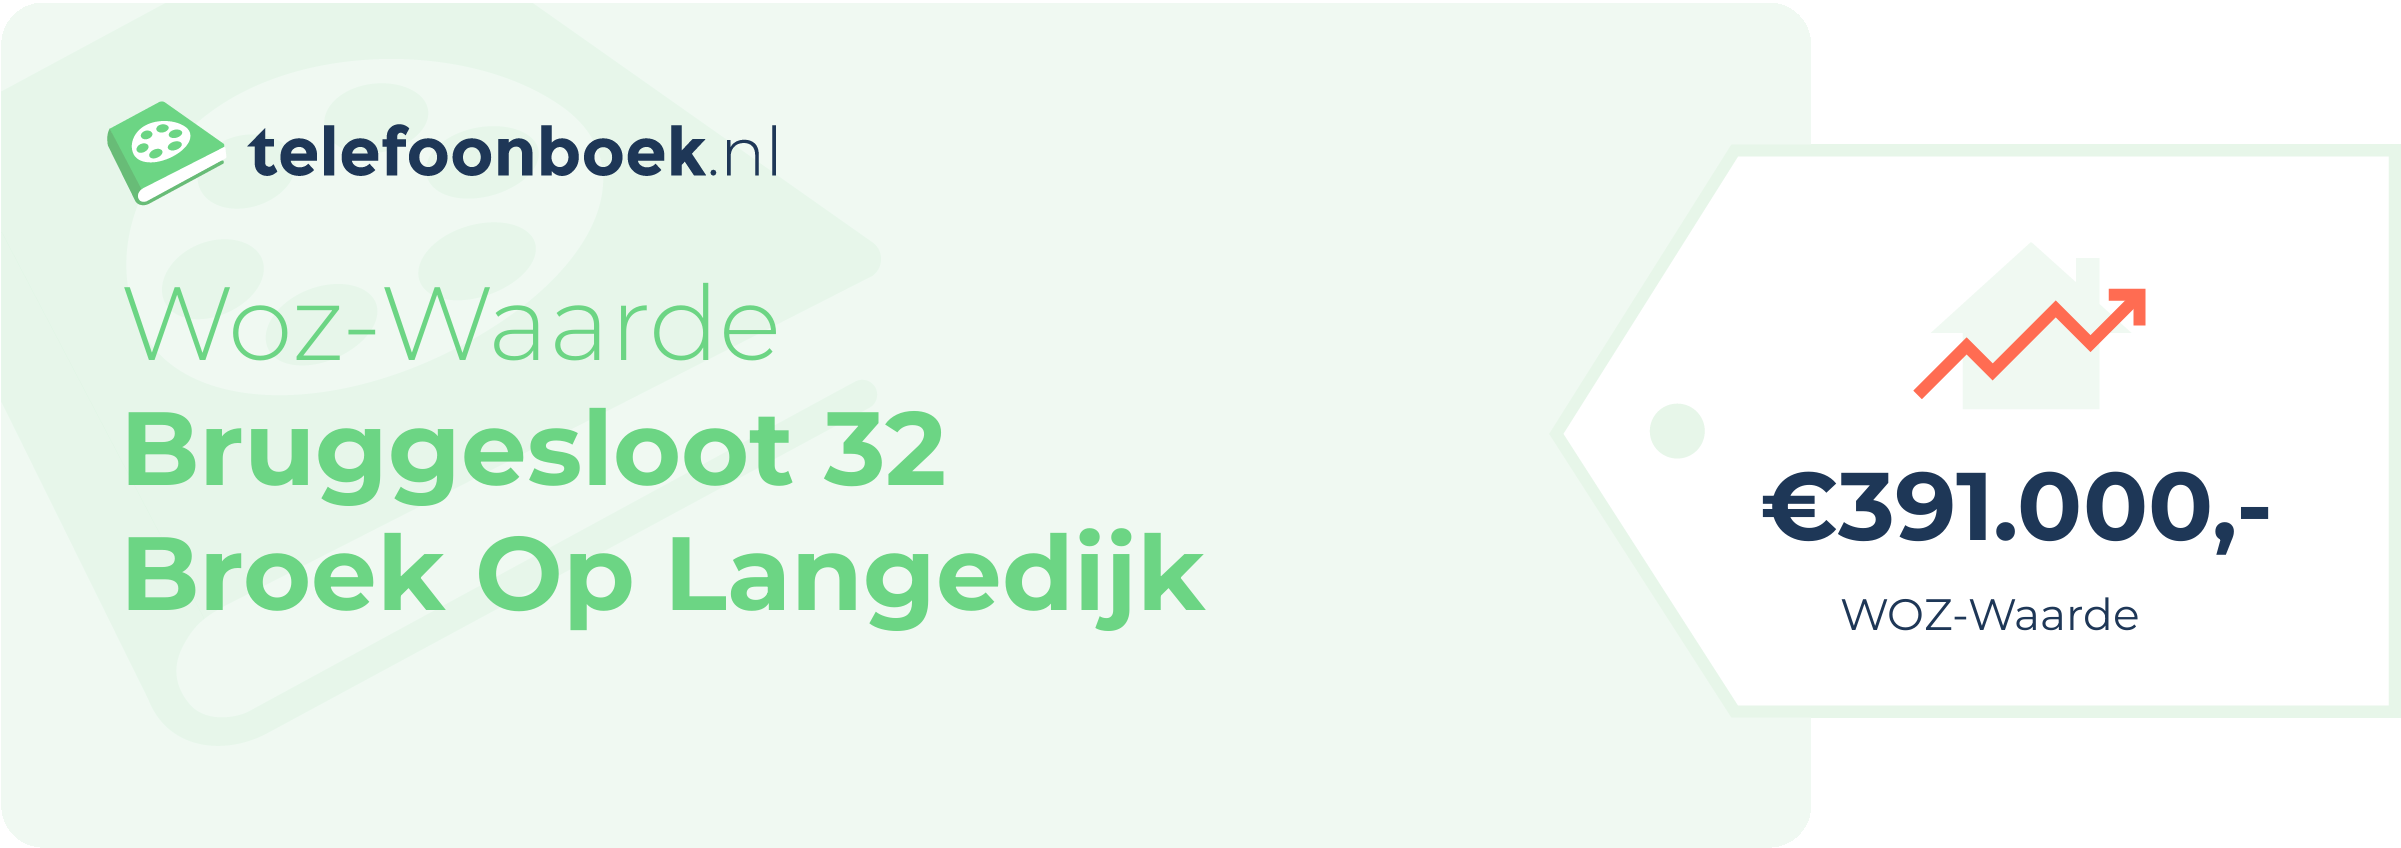 WOZ-waarde Bruggesloot 32 Broek Op Langedijk